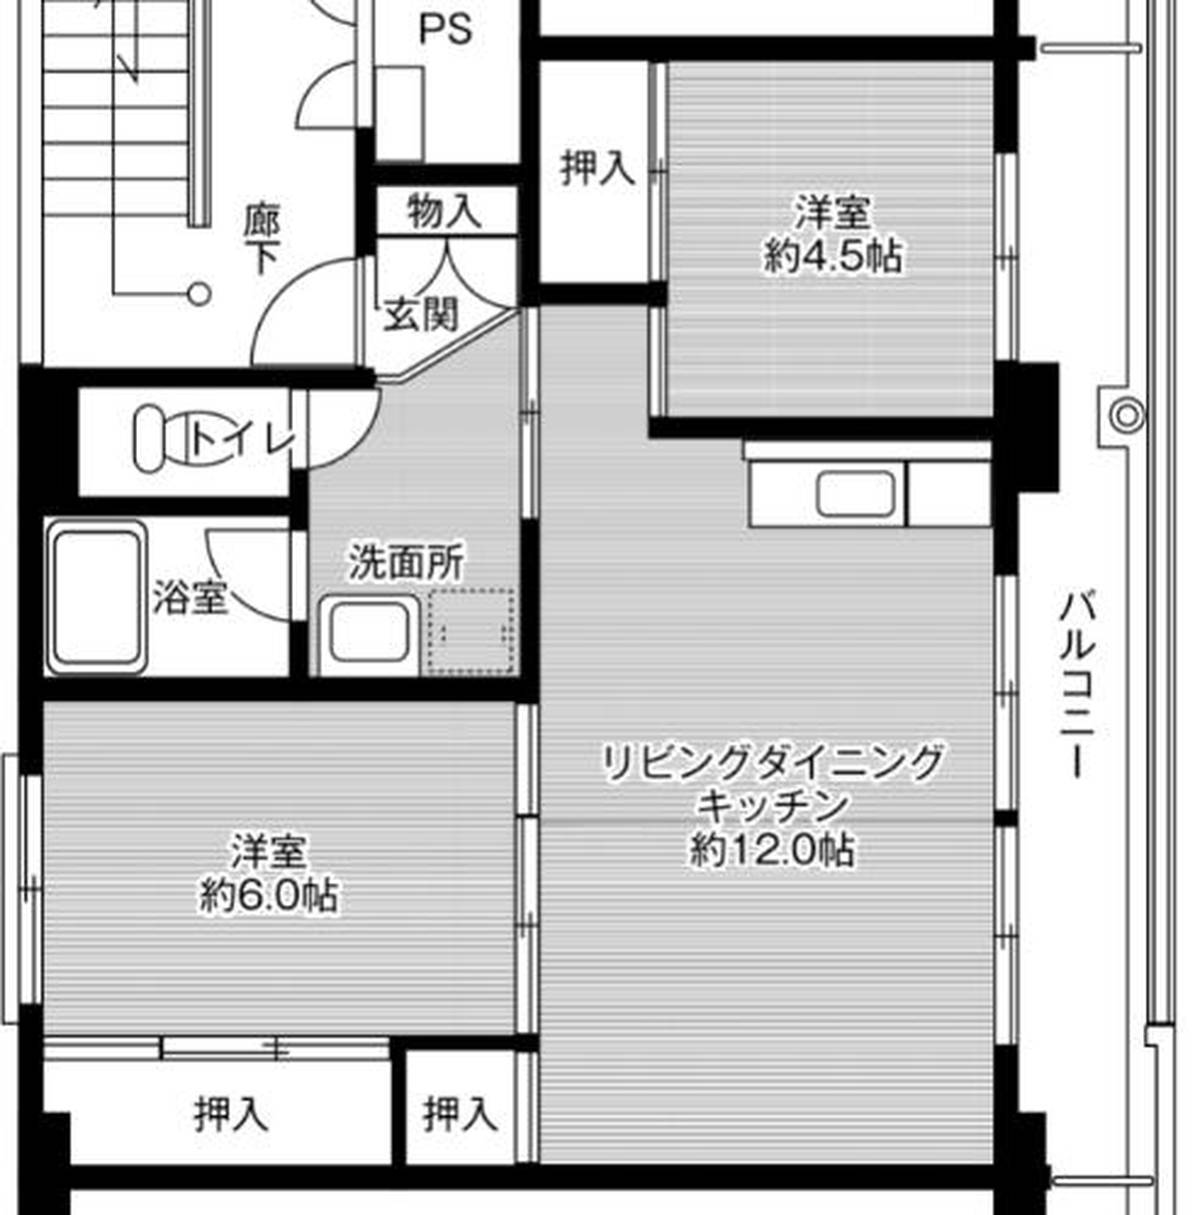 2LDK floorplan of Village House Mitsuhashi in Yanagawa-shi